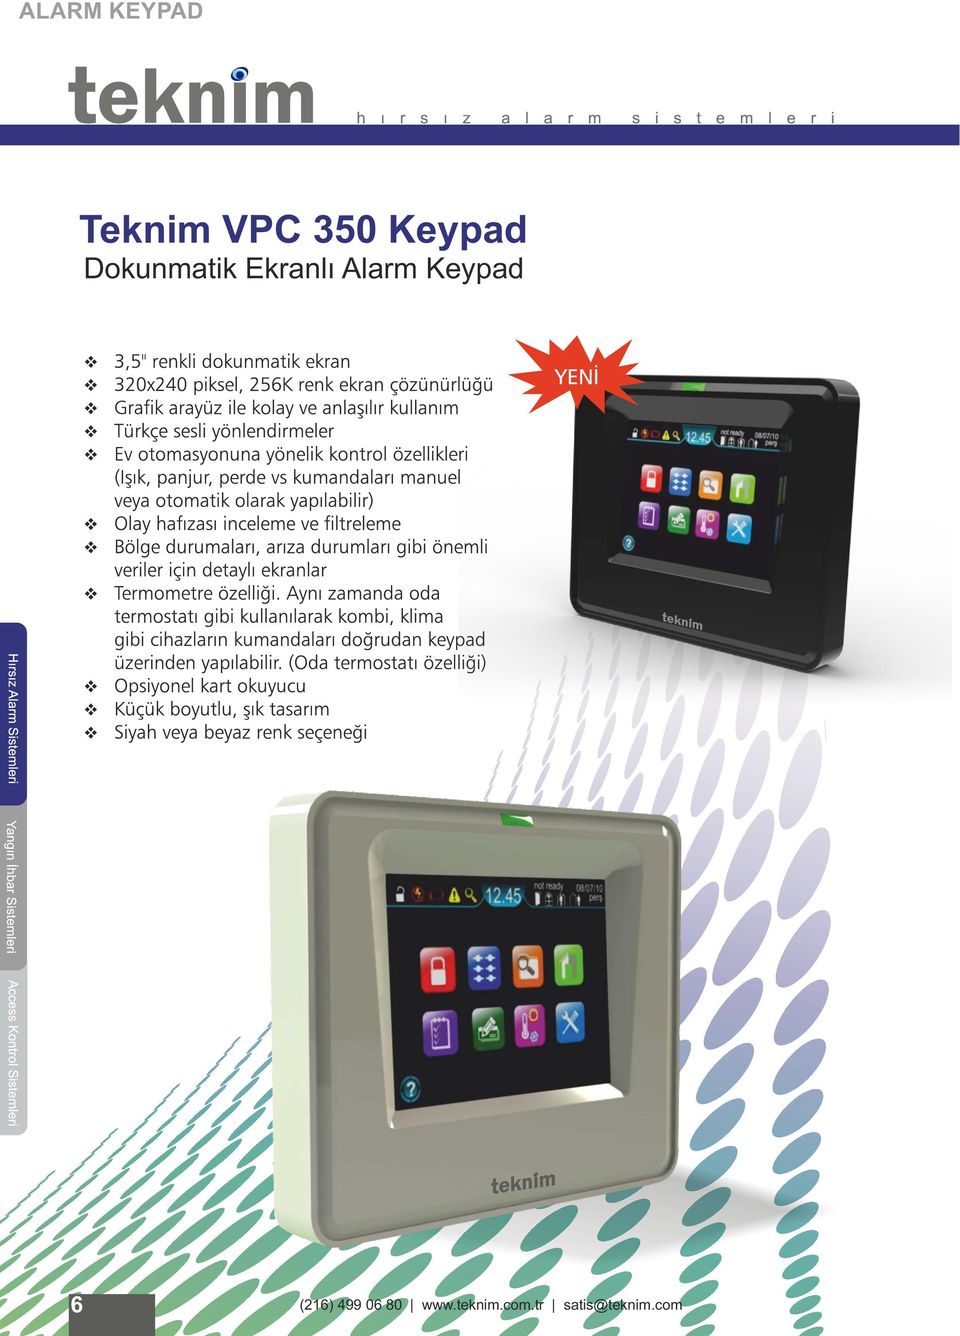 Alarm Keypad 6 (216) 499 06